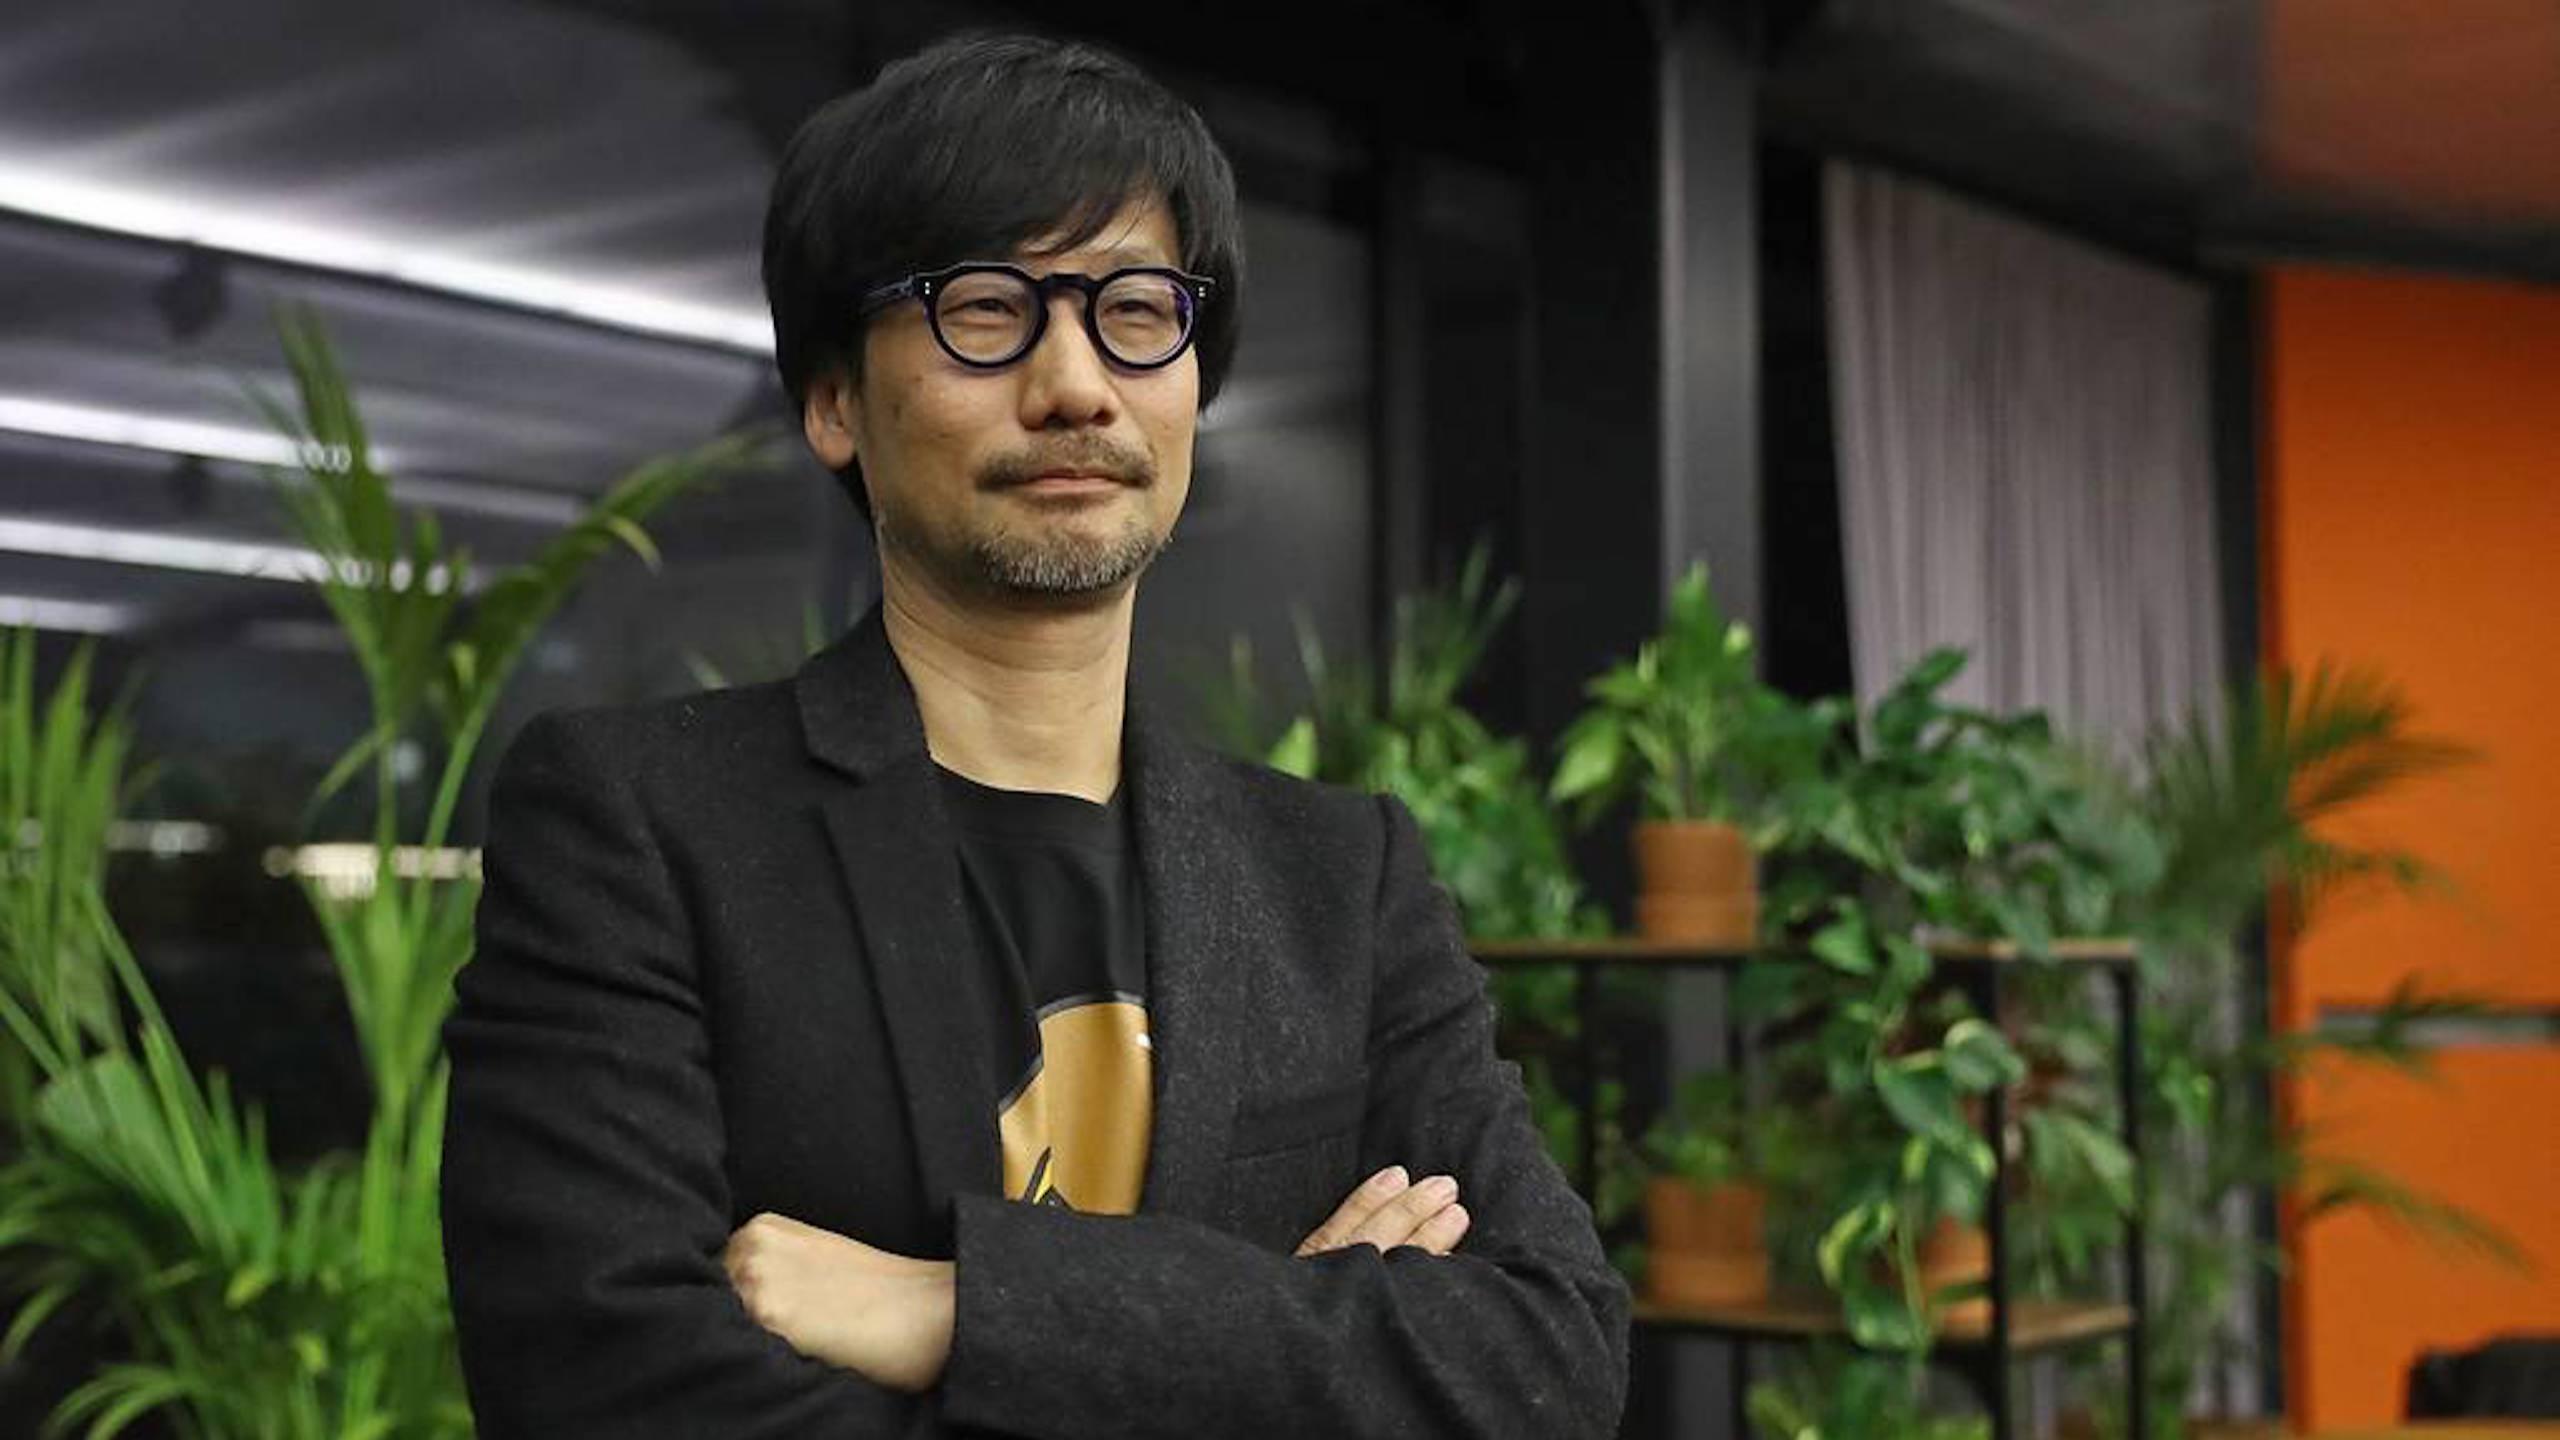 Хидео Кодзима хочет сделать игру, которая будет меняться в реальном времени